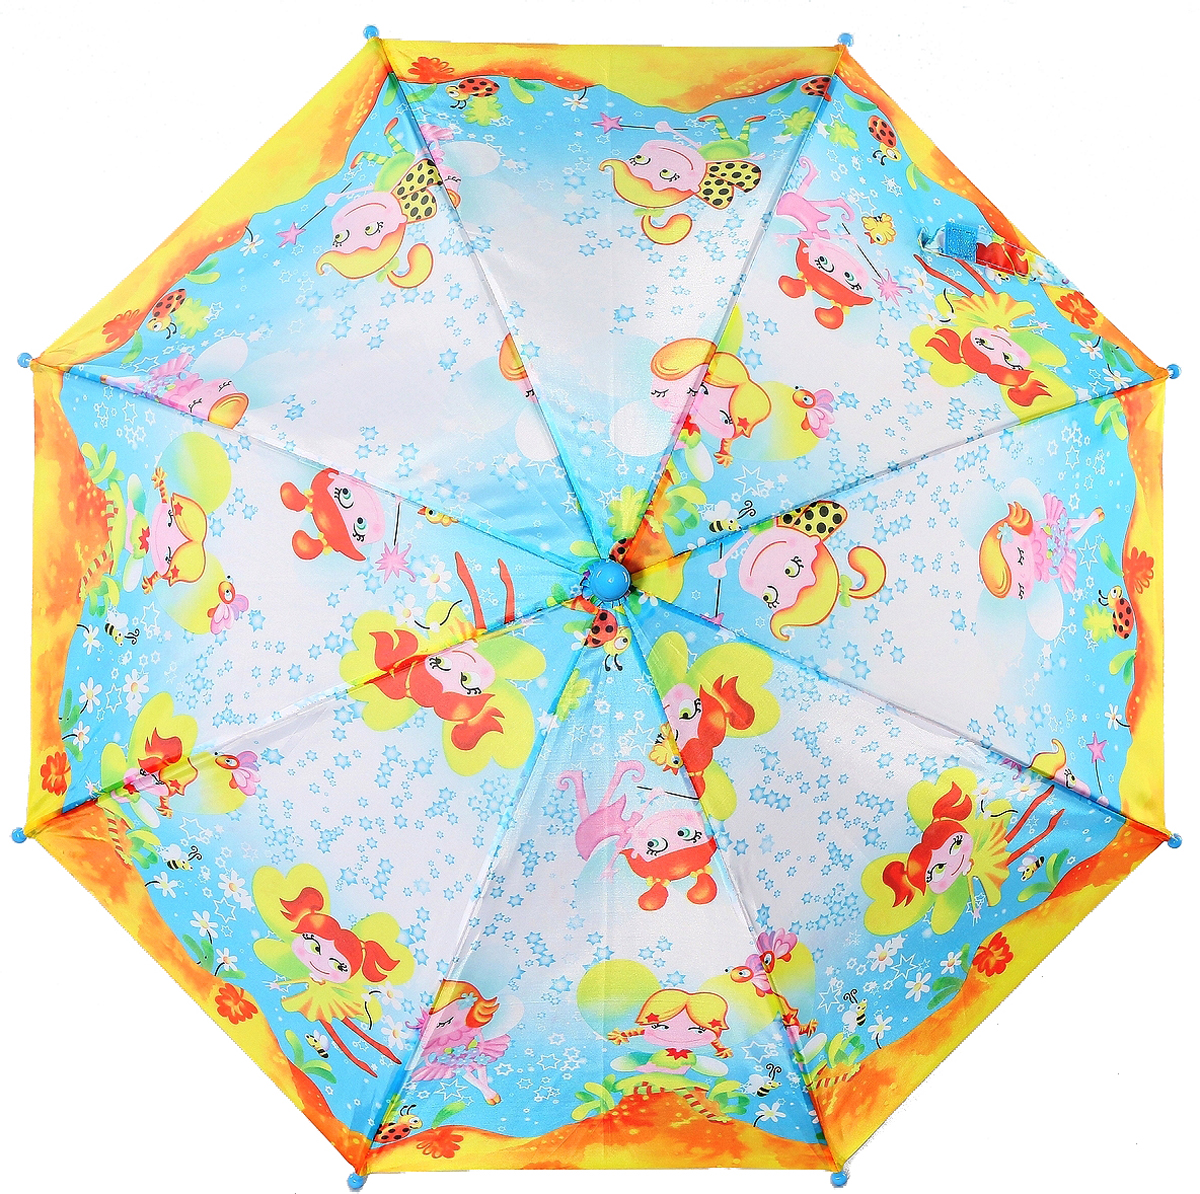 Зонт Artrain арт.1651-09_голубой, рыжий, желтый, голубой, оранжевый